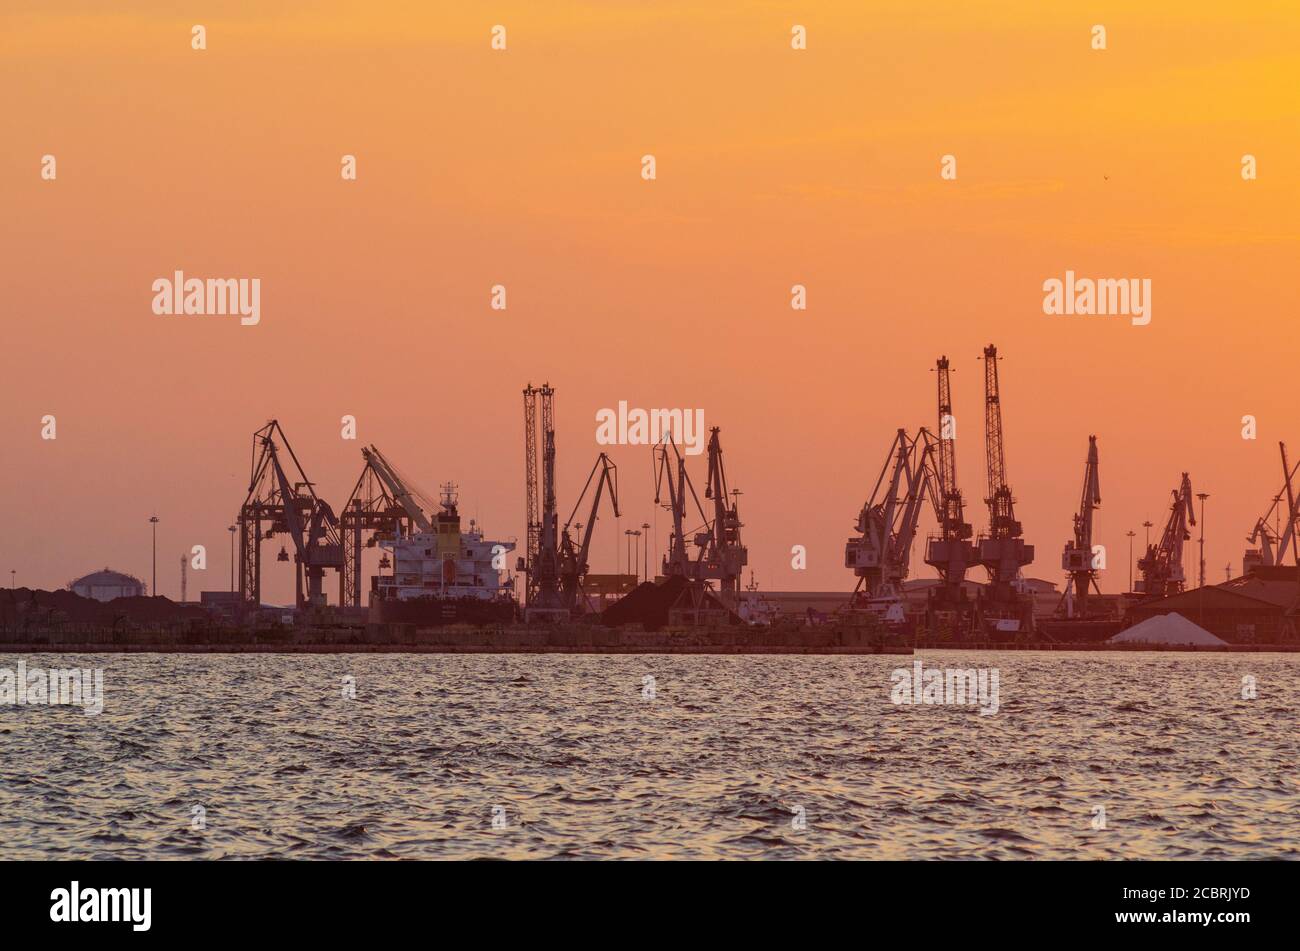 Navires-conteneurs quittant le port de Thessalonique Macédoine Grèce - photo: Geopix/Alay stock photo Banque D'Images